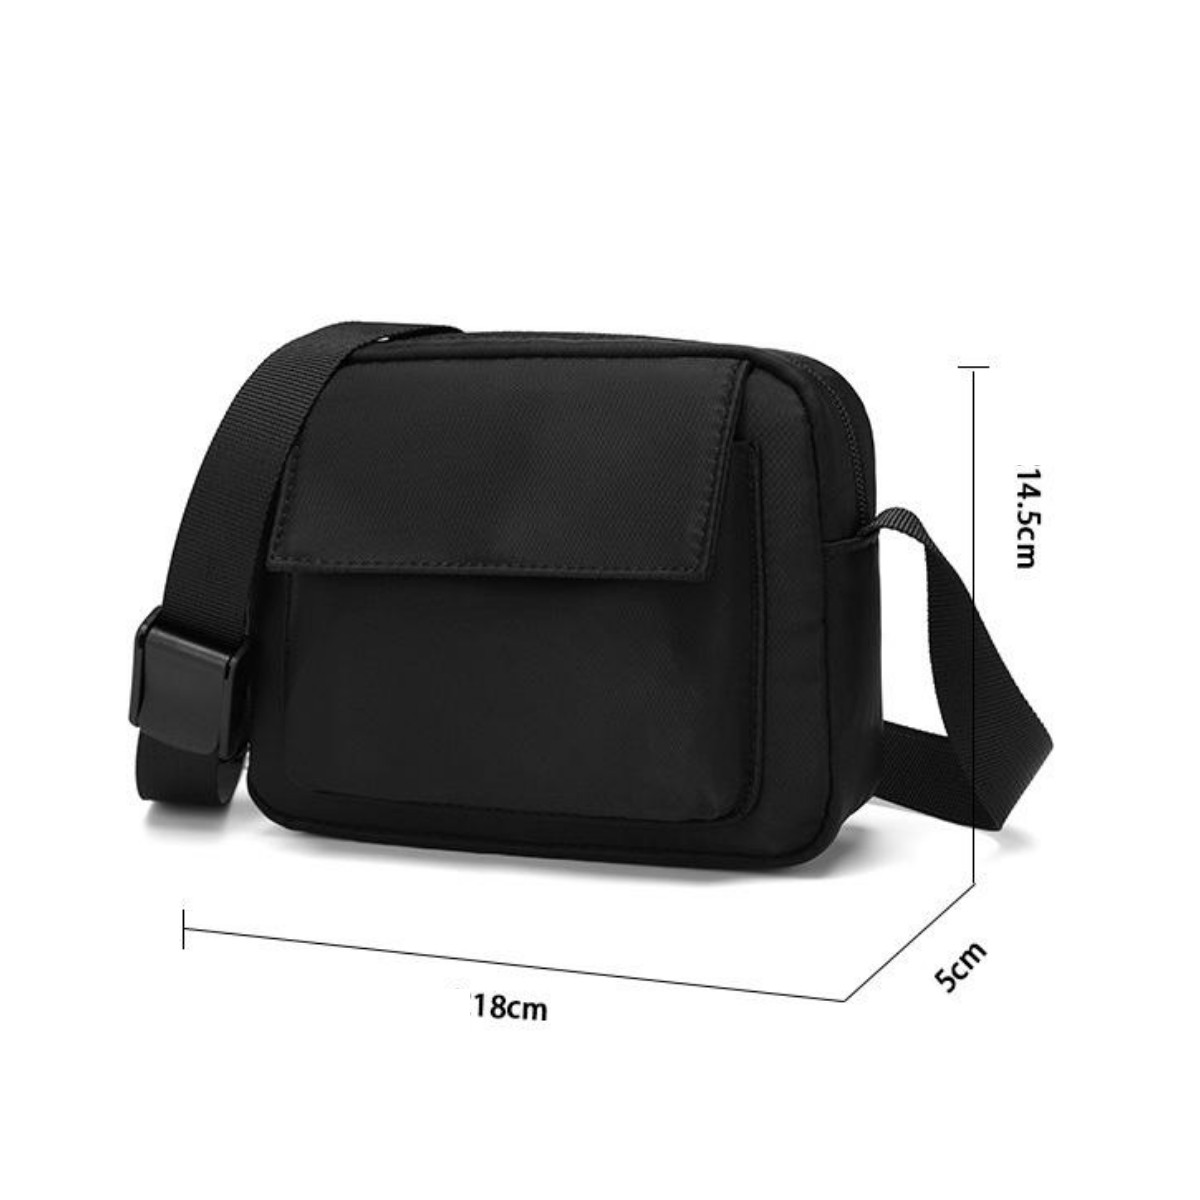 Túi đeo chéo nam thời trang phong cách basic chống nước form đứng chắc chắn TD50 thiết kế sang trọng độc đáo nắp đậy vuông vắn vải